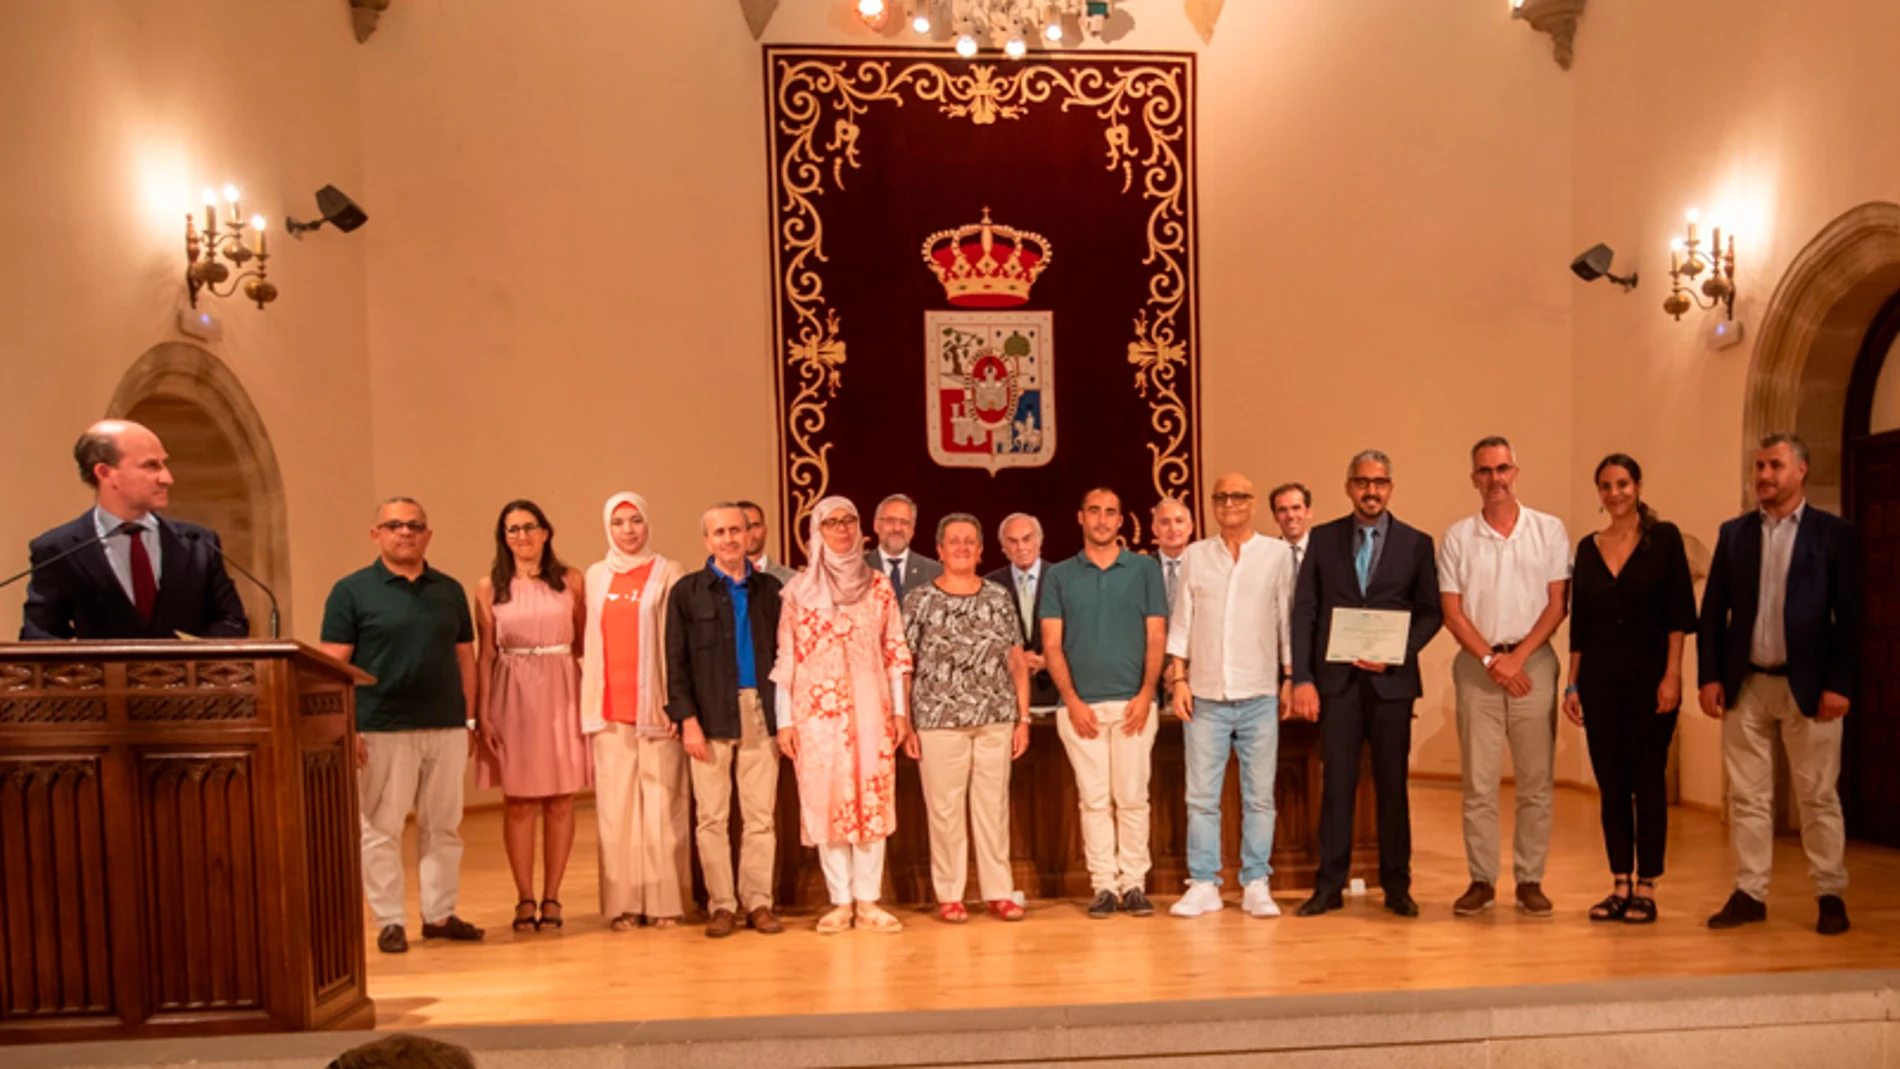 Grupo de investigación de la universidad argelina de Tlemcen, uno de los tres ganadores de la primera edición del Certamen de Seminarios sobre Hispanismo Internacional